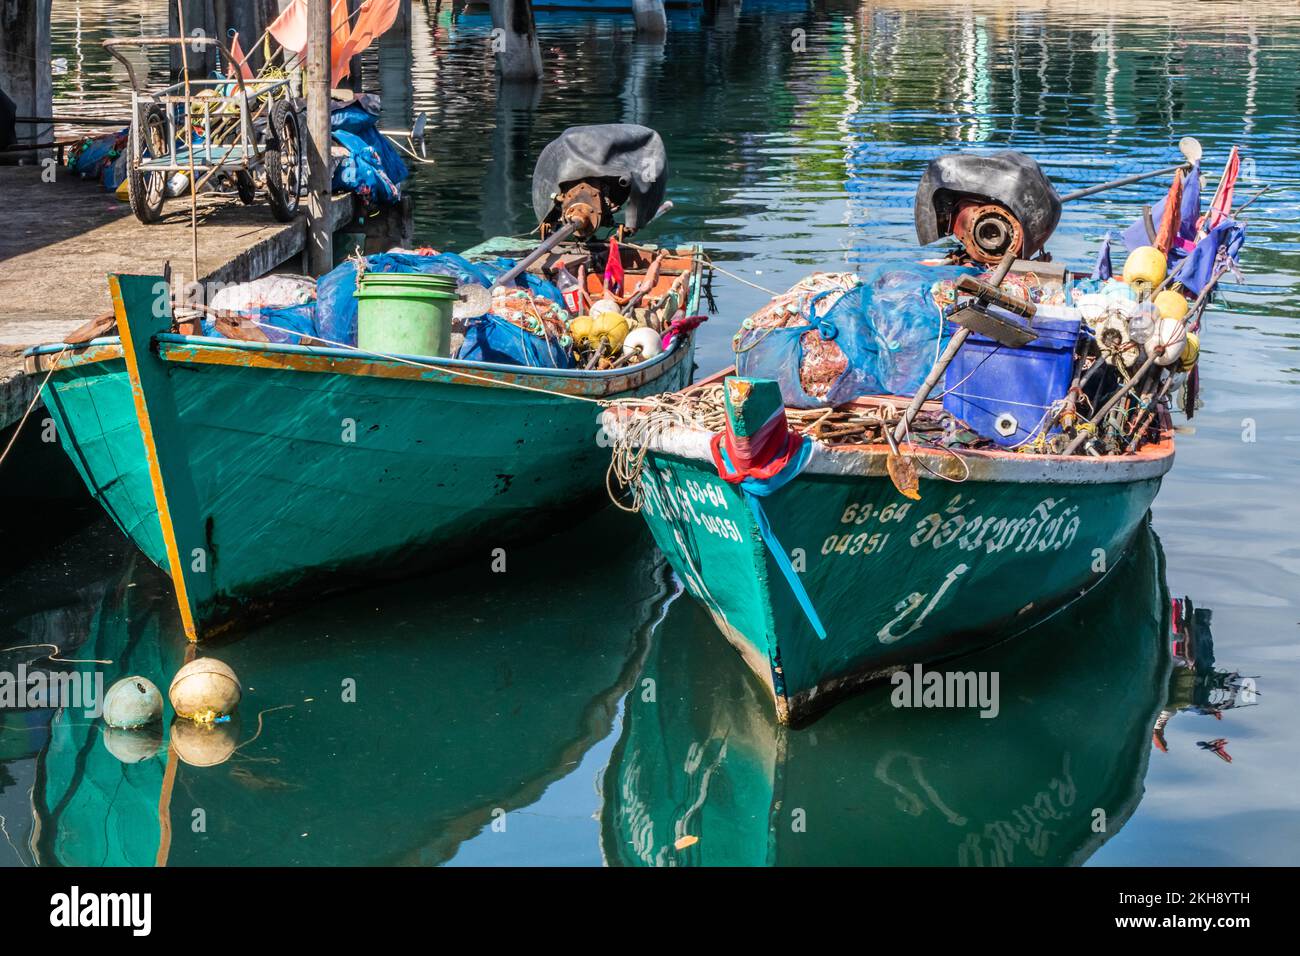 Bateaux de pêche thaïlandais, Trat, Thaïlande Banque D'Images